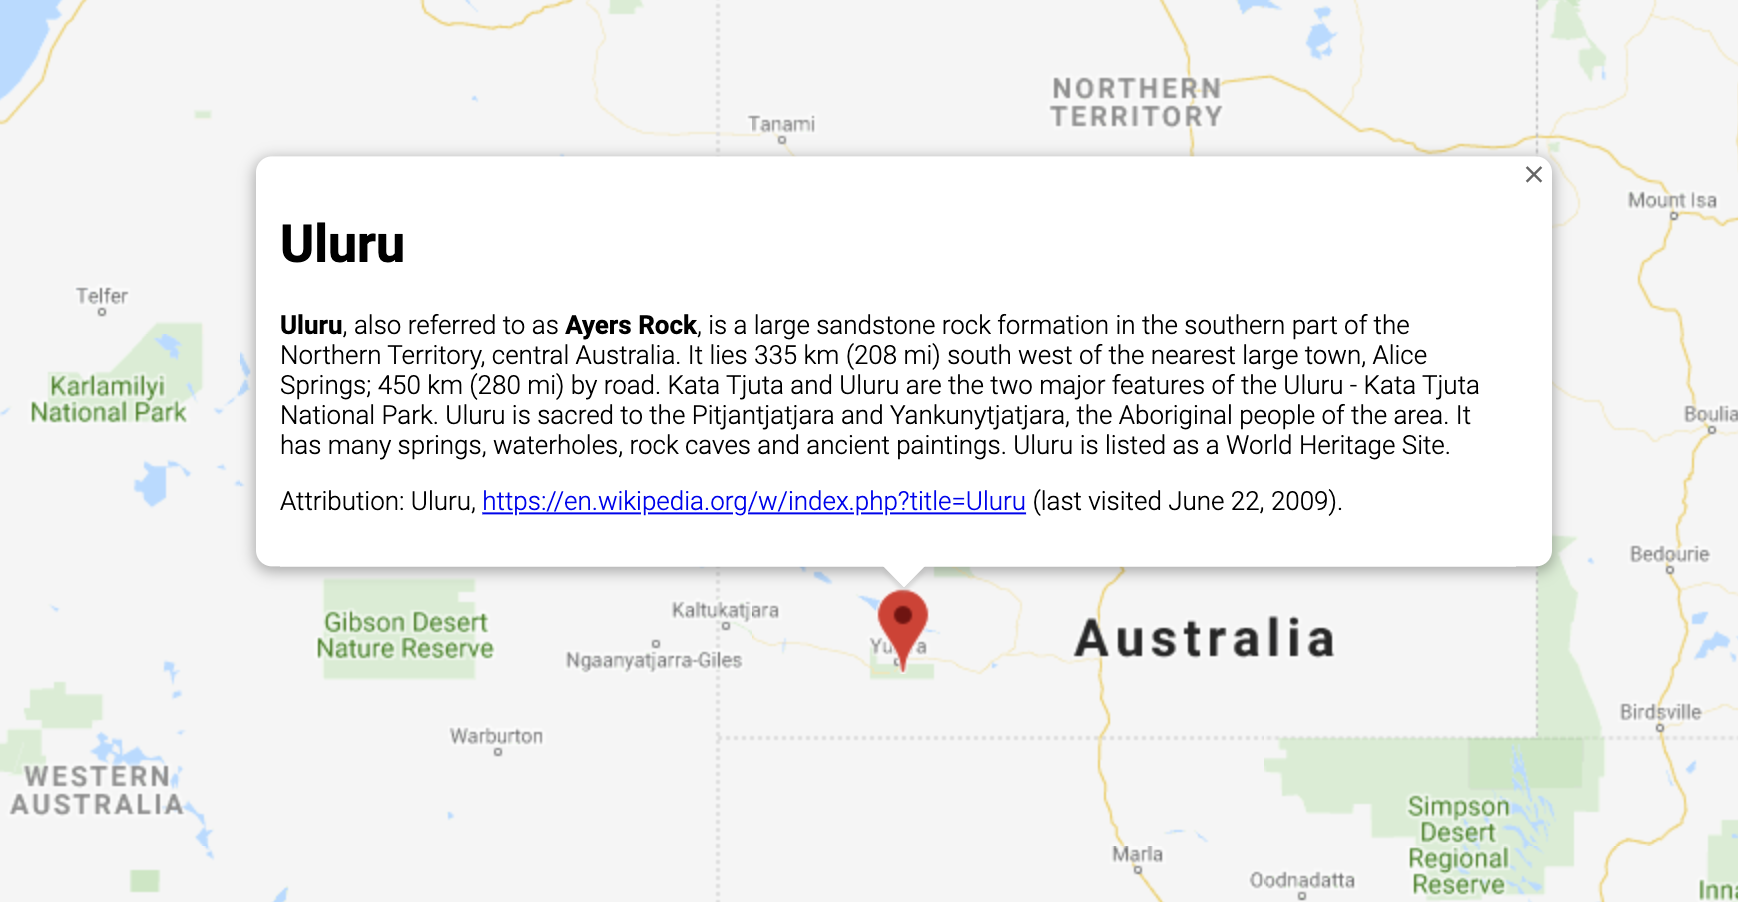 Infofenster mit Informationen zu einem Standort in Australien